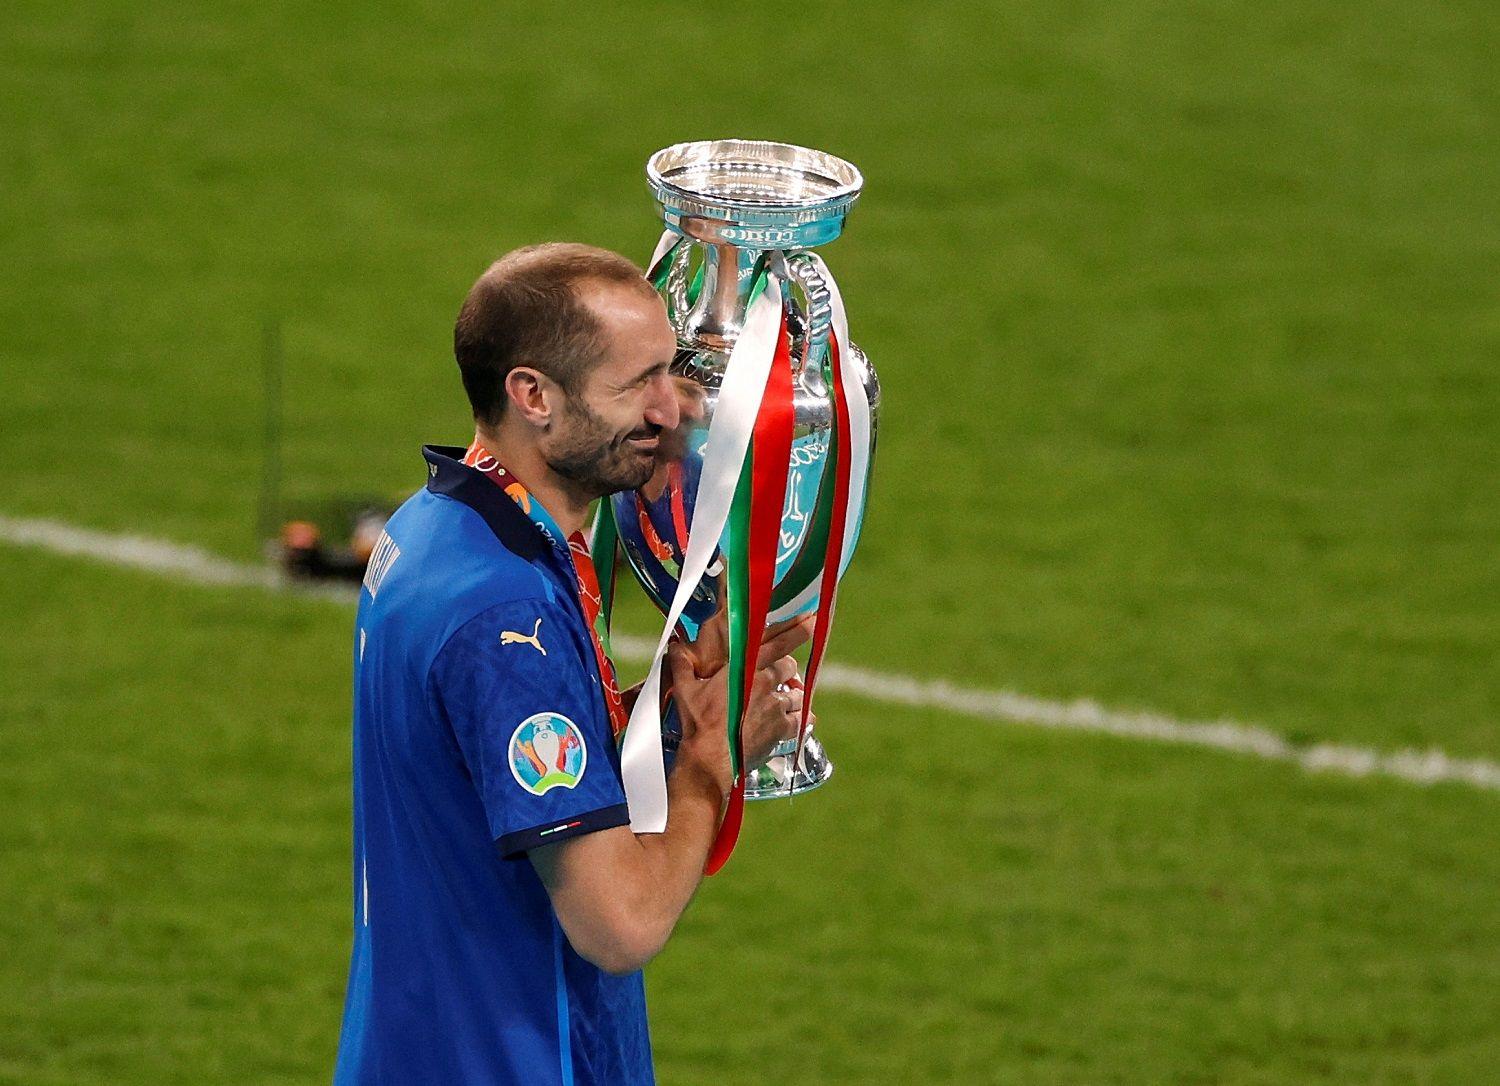 المدافع الإيطالي جورجيو كيليني يحمل كأس النسخة الأخيرة من بطولة أمم أوروبا